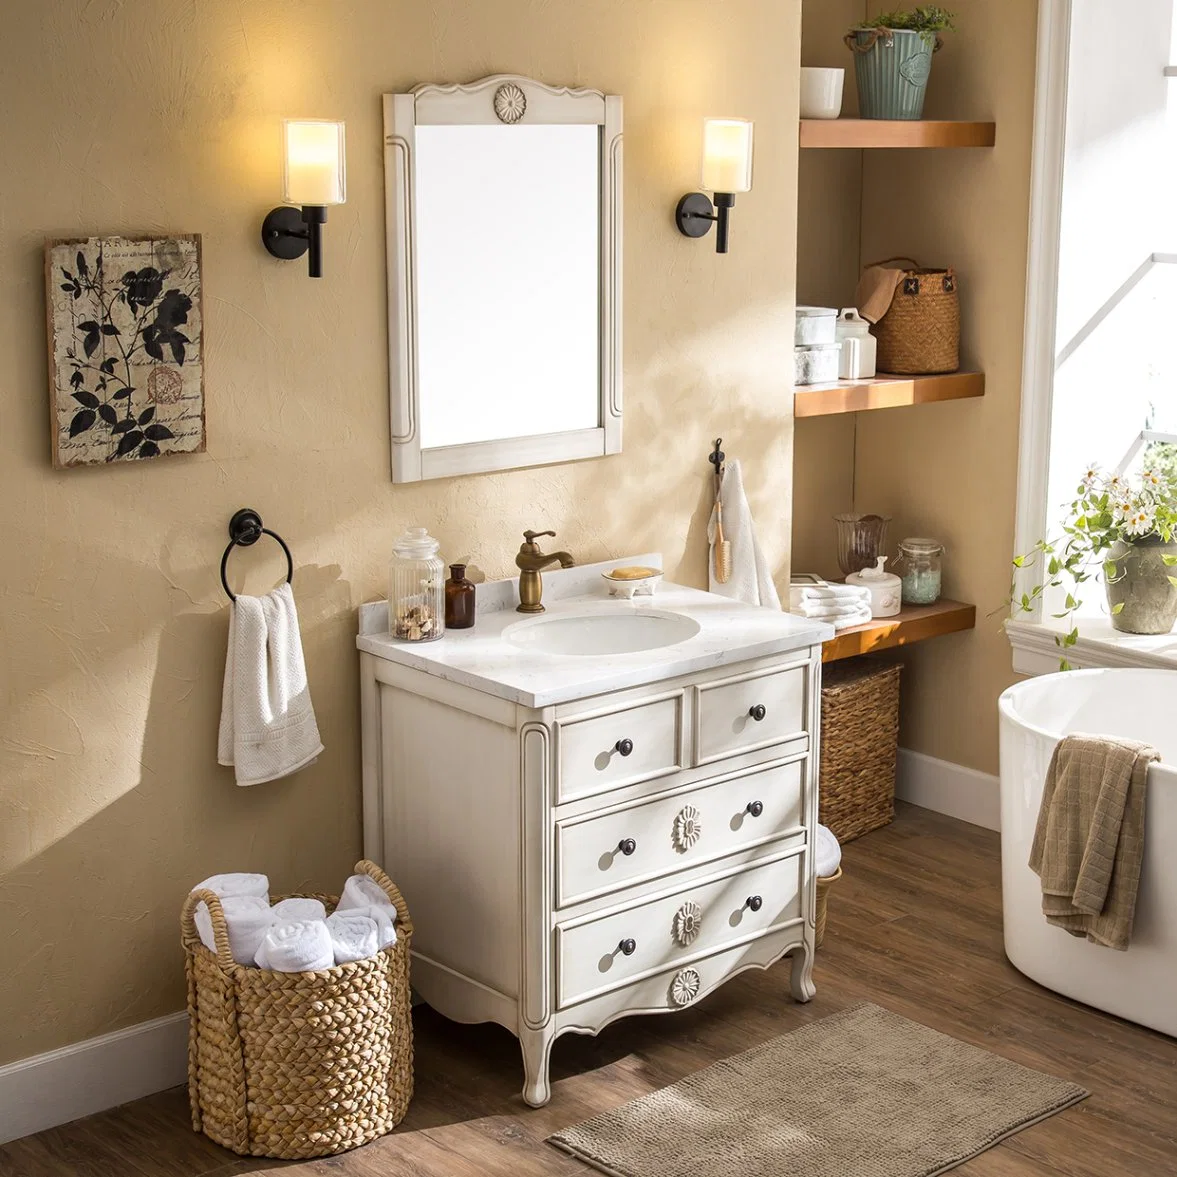 Badezimmer im amerikanischen Stil mit Spiegel Badezimmer aus massivem Holz Waschtisch Antike Waschbecken Badezimmer Waschtische